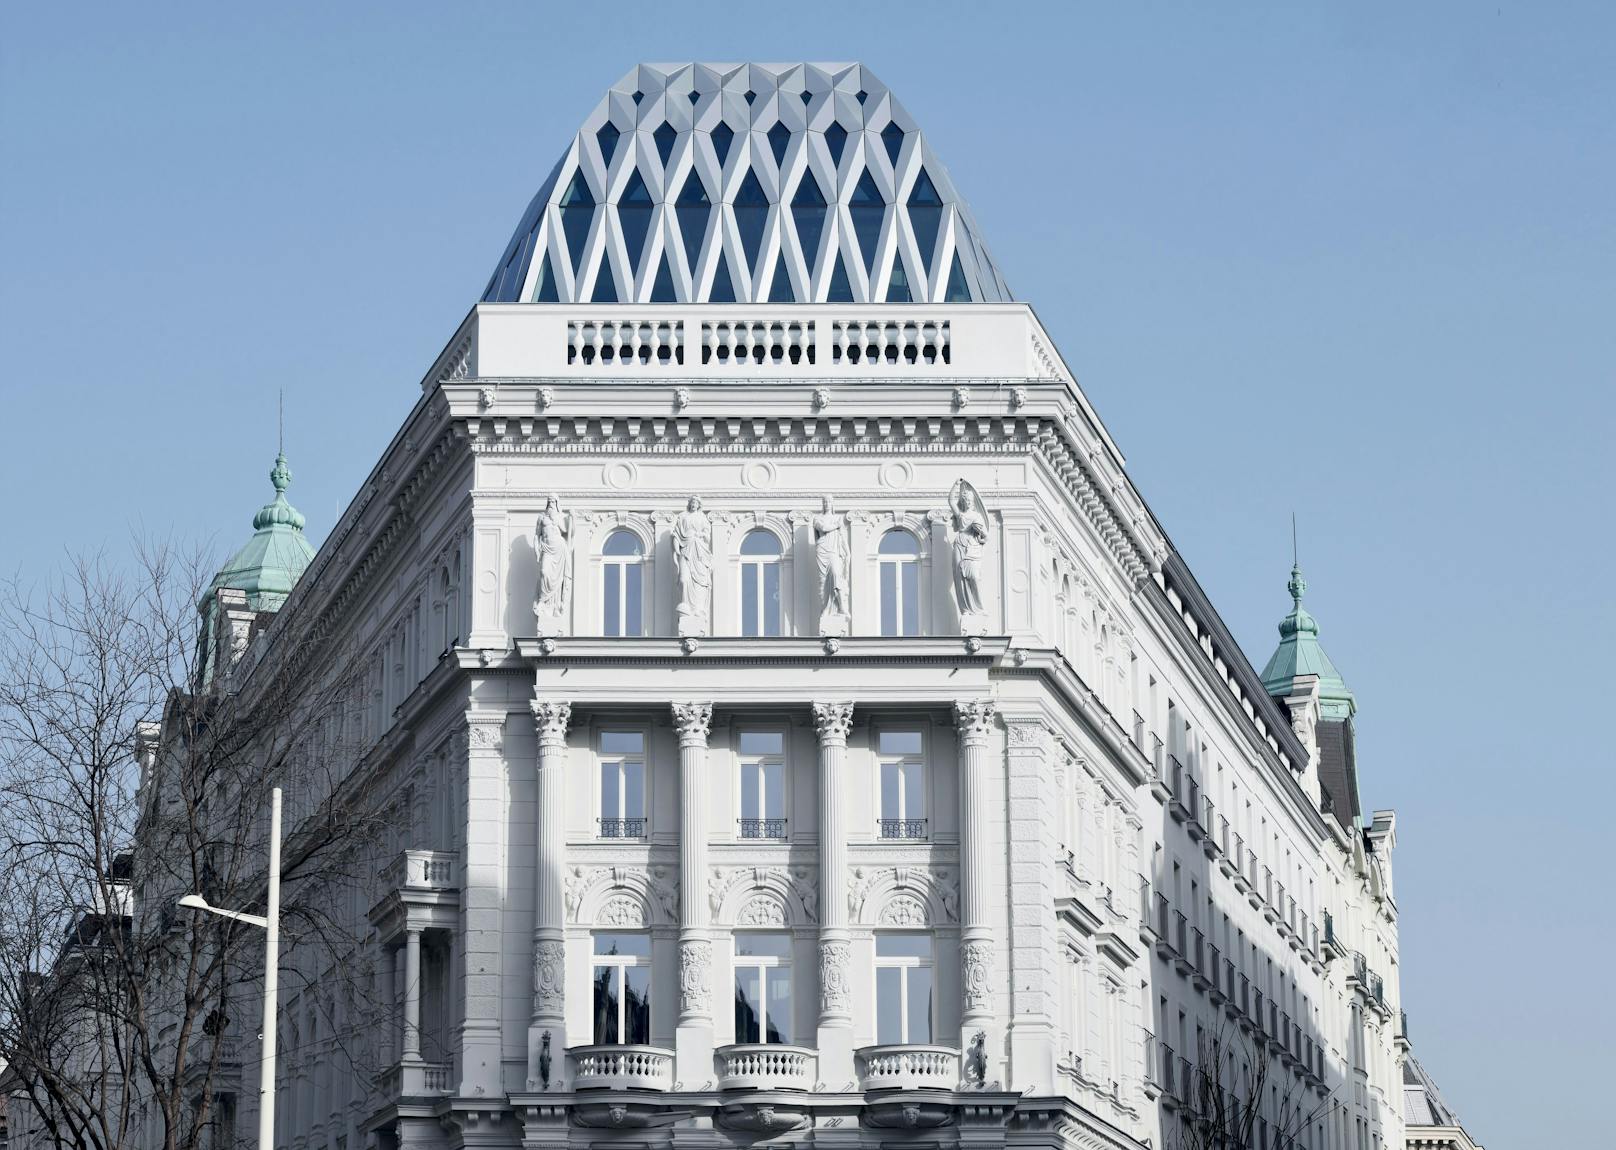 Das Boutique Hotel "Motto" öffnet ab 2. Oktober 2021 auf der Wiener Mariahilfer Straße seine Pforten.